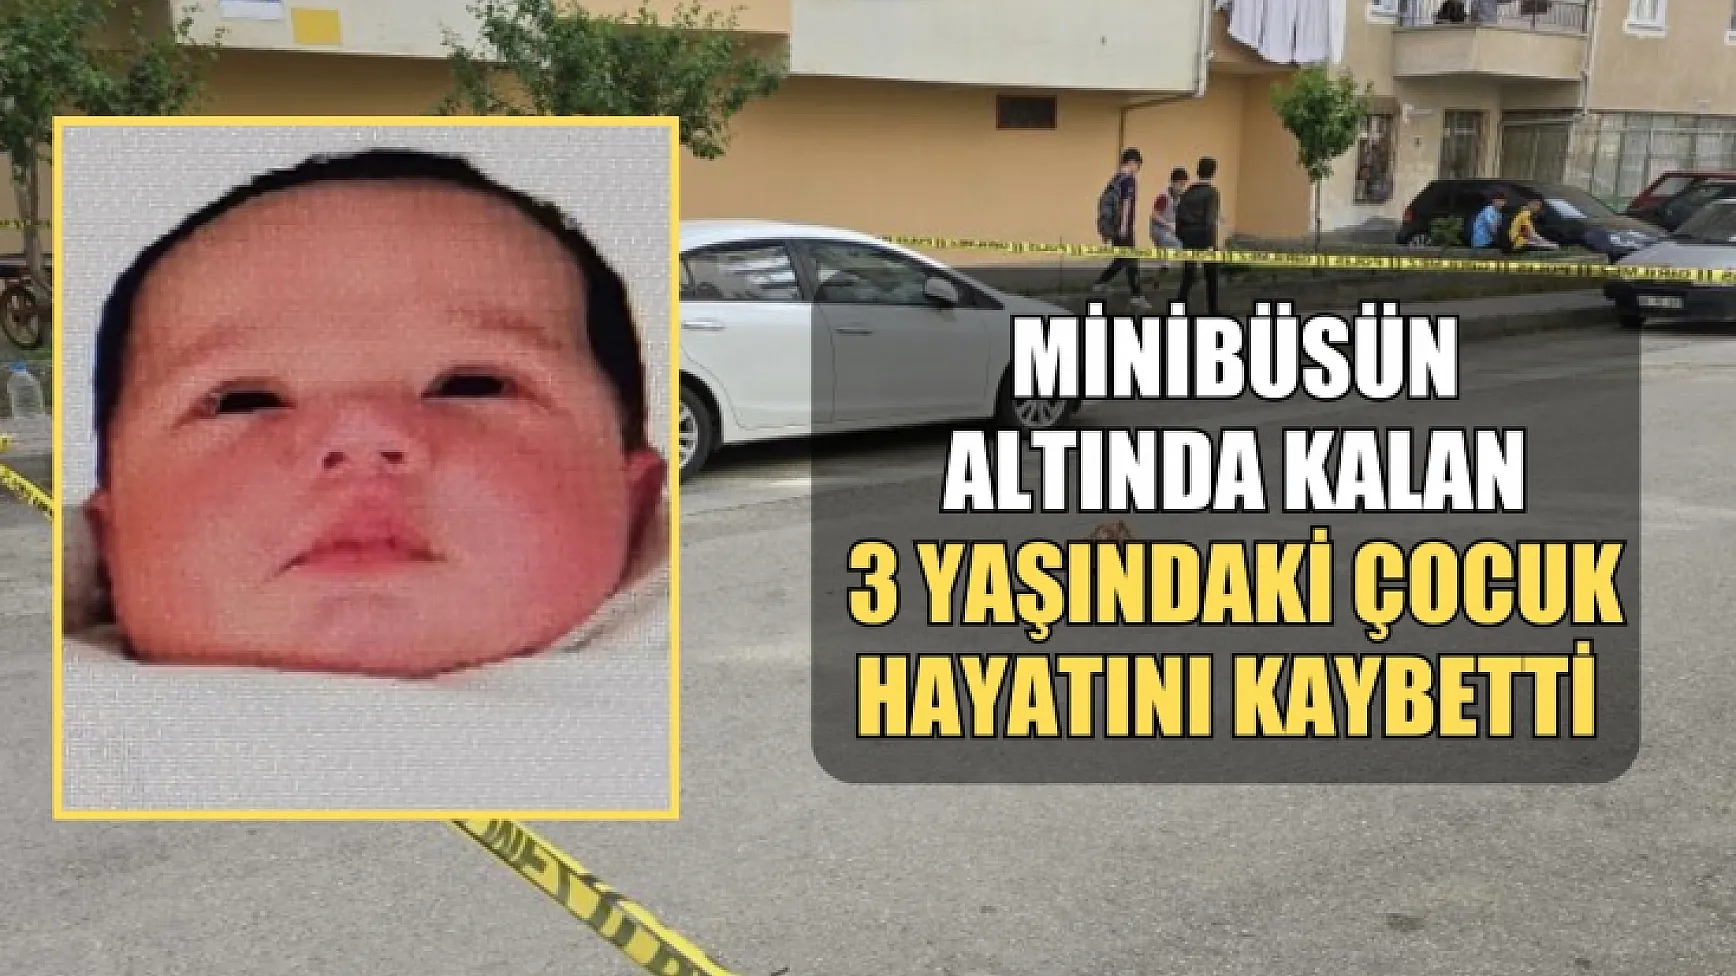 Minibüsün altında kalan 3 yaşındaki çocuk hayatını kaybetti